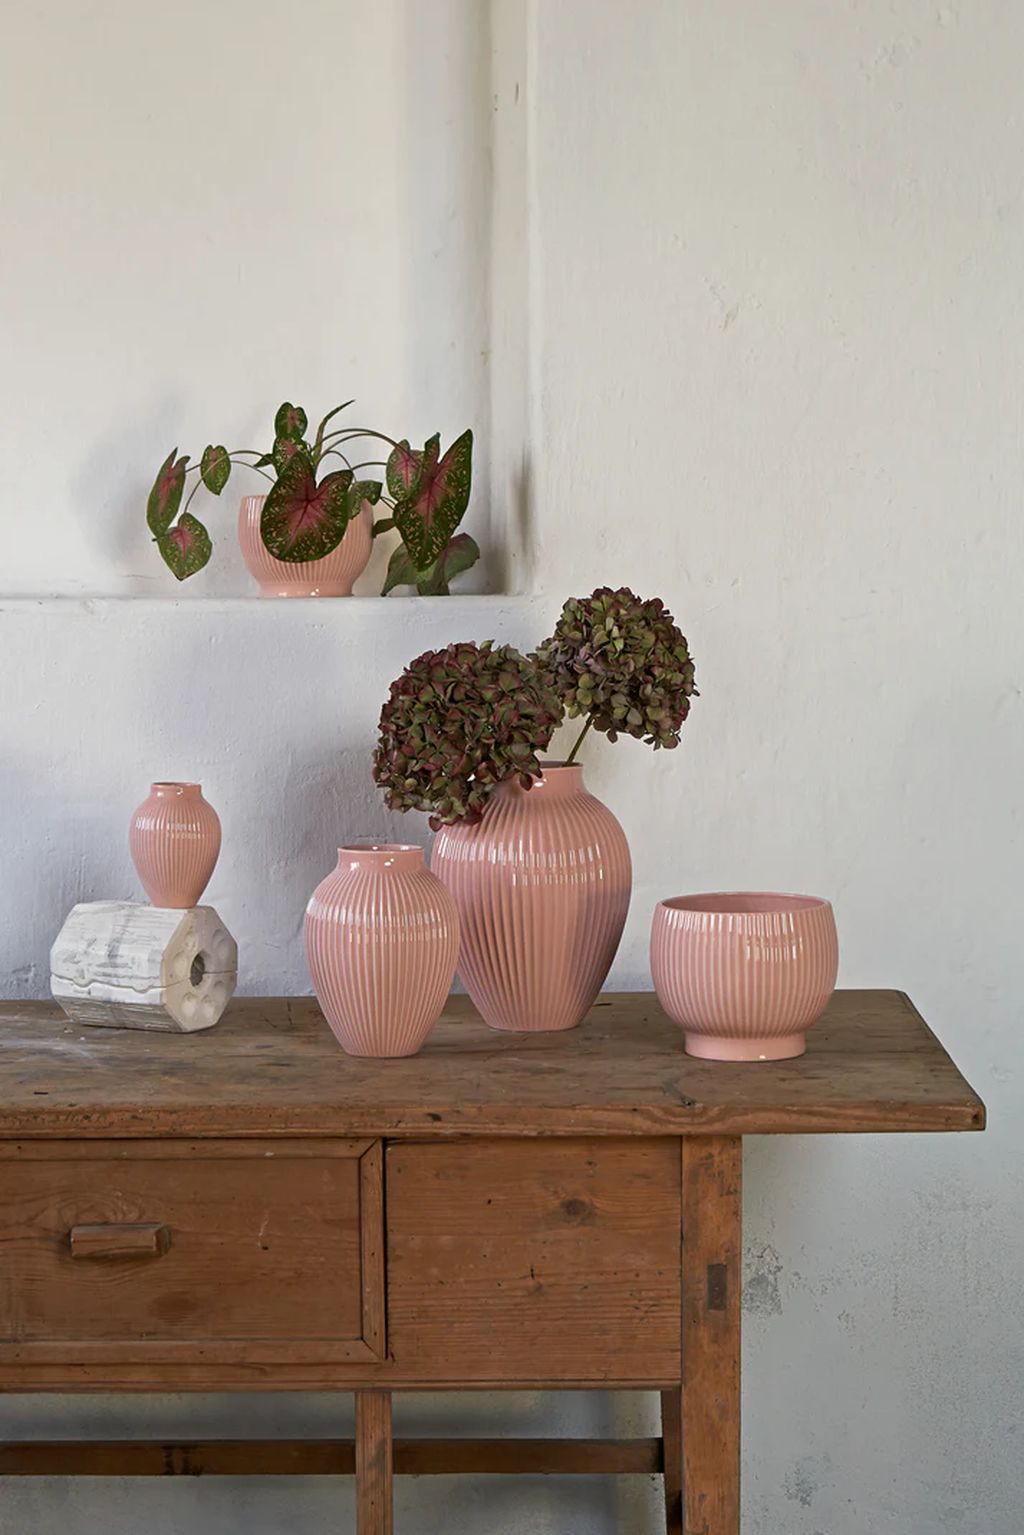 带轮的knabstrup keramik花盆Ø16.5厘米，粉红色